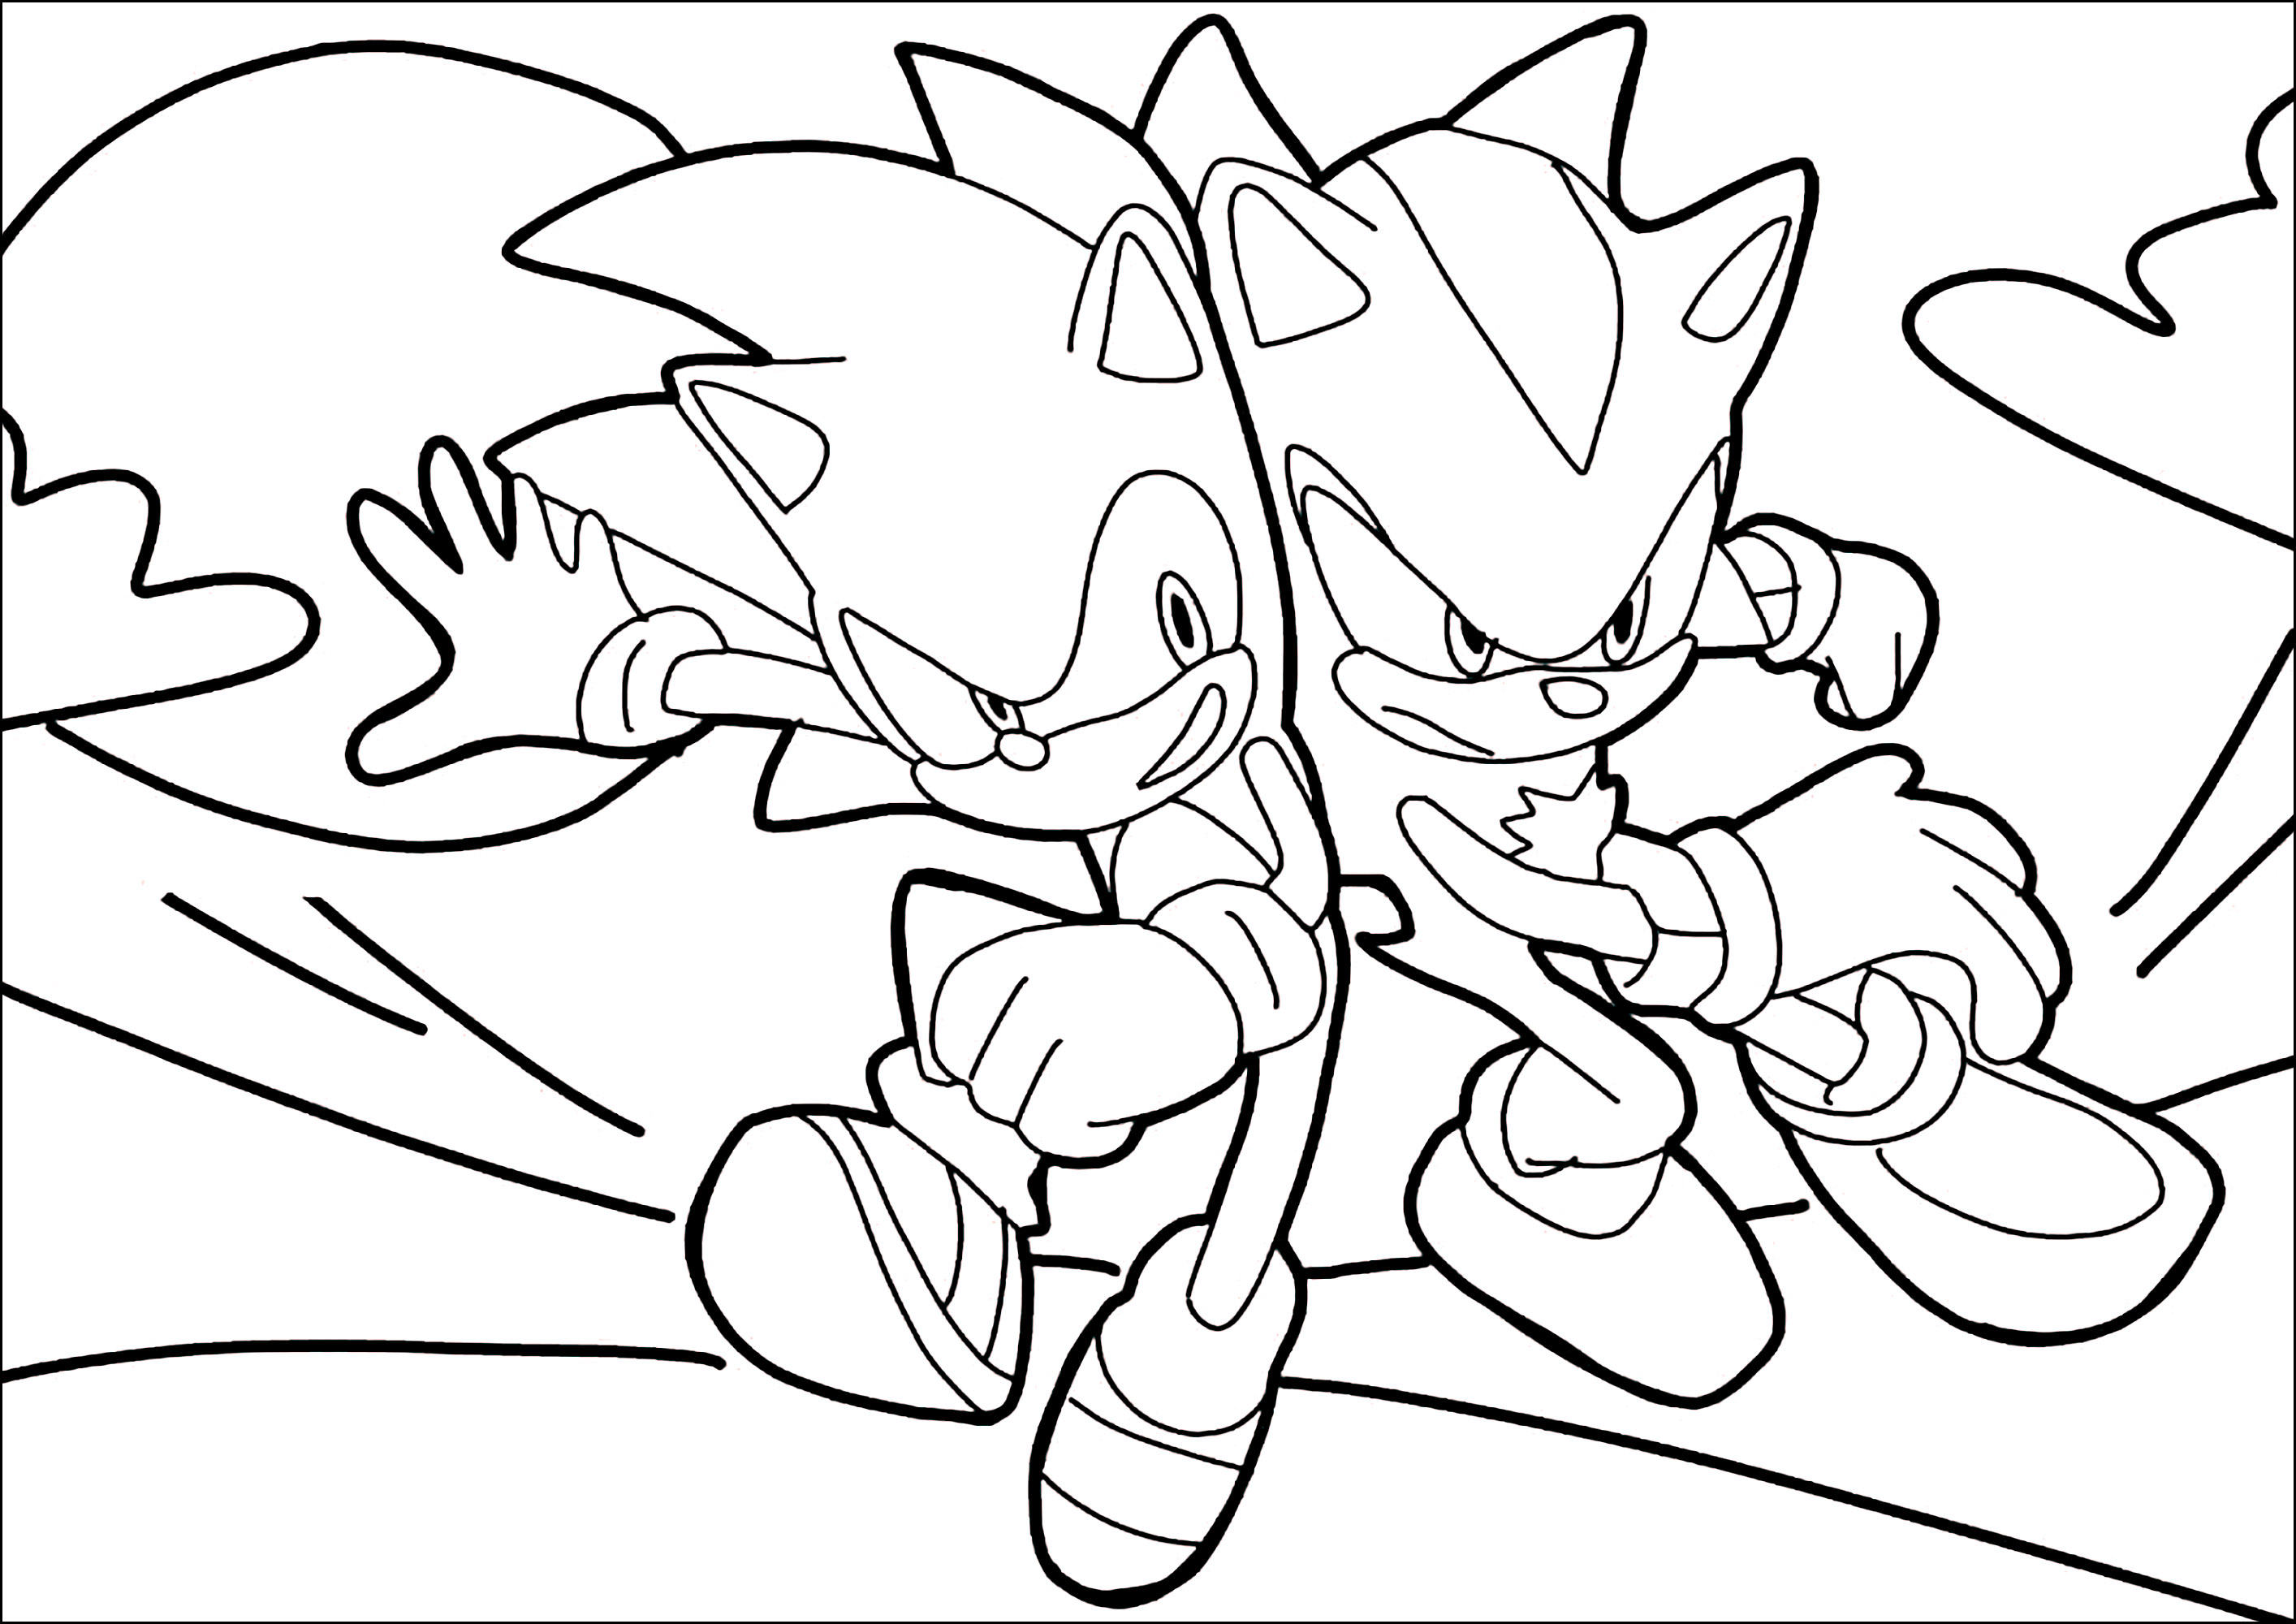 Shadow the hedgehog com Sonic - Sonic - Just Color Crianças